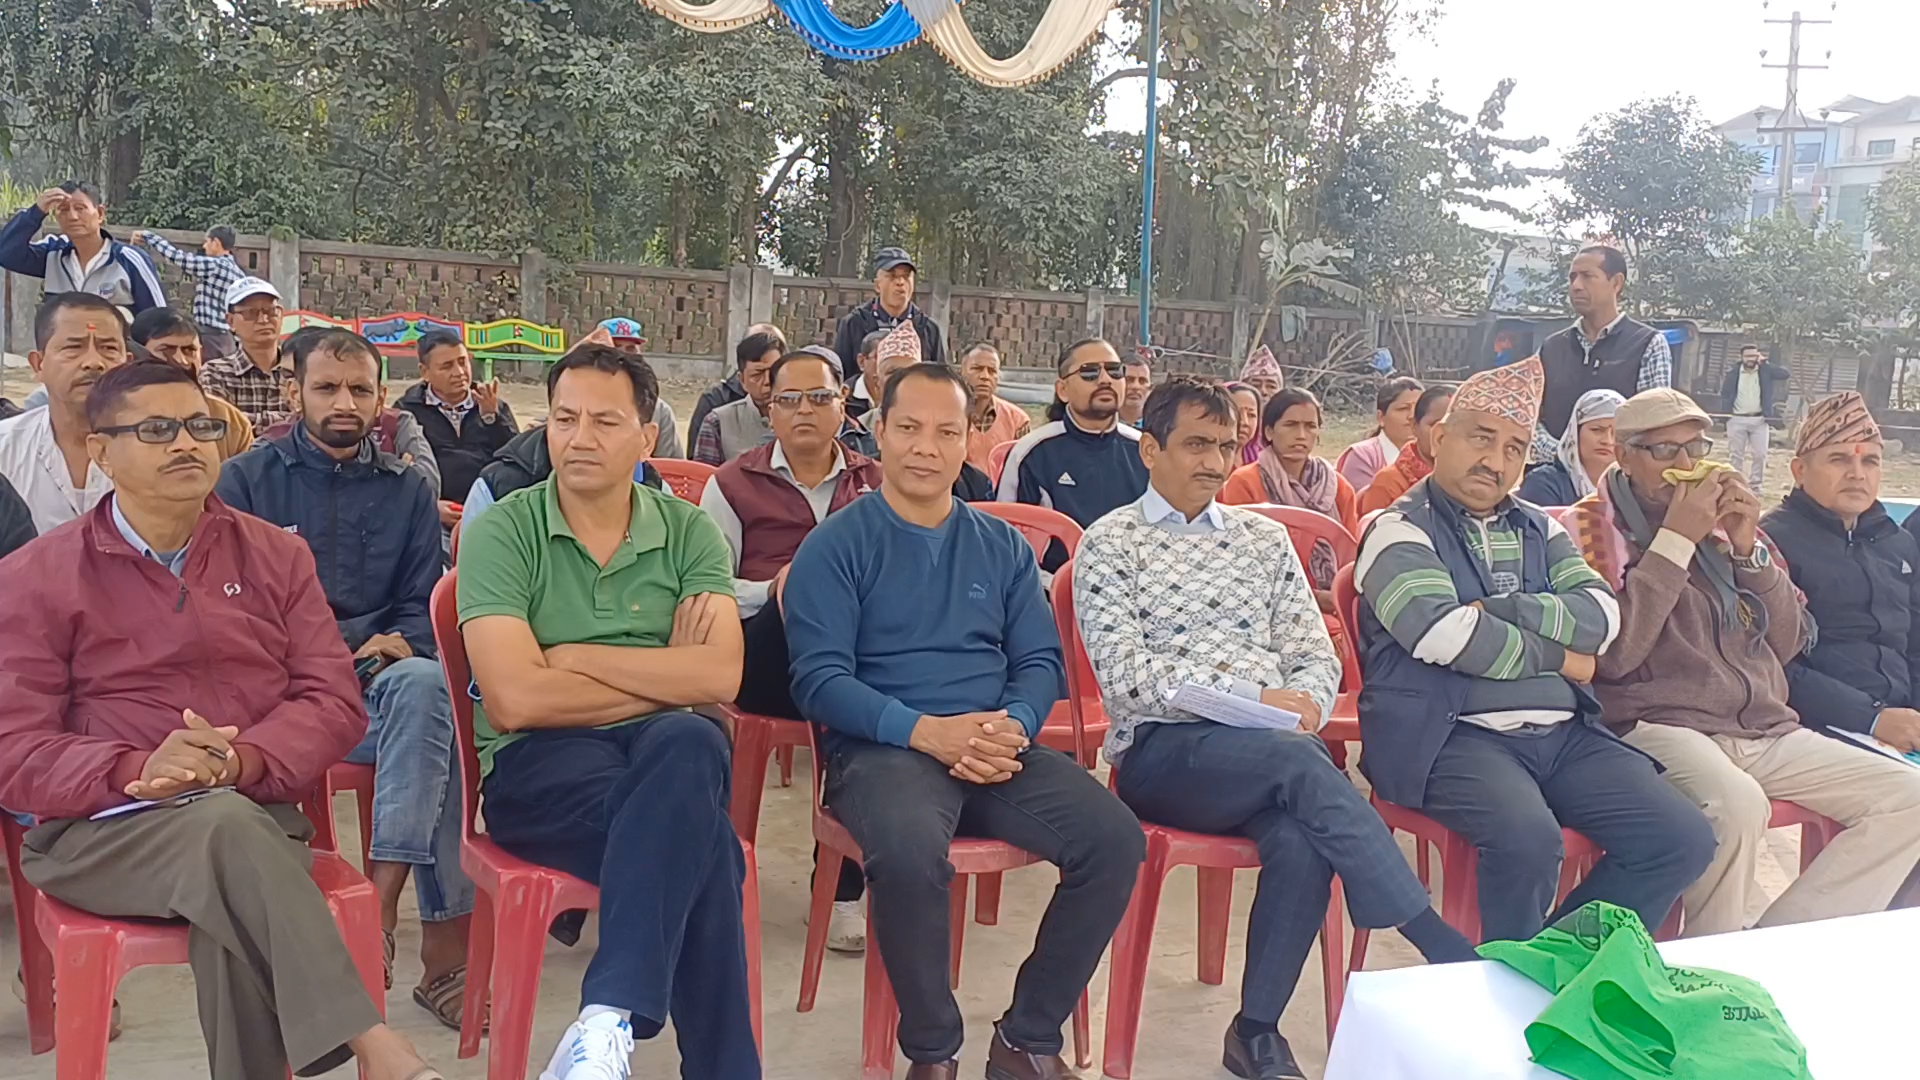 लुम्बिनी चिनी मिलको प्रदुषण न्युनिकरण गर्न माग गर्दै स्थानियहरु आन्दोलित